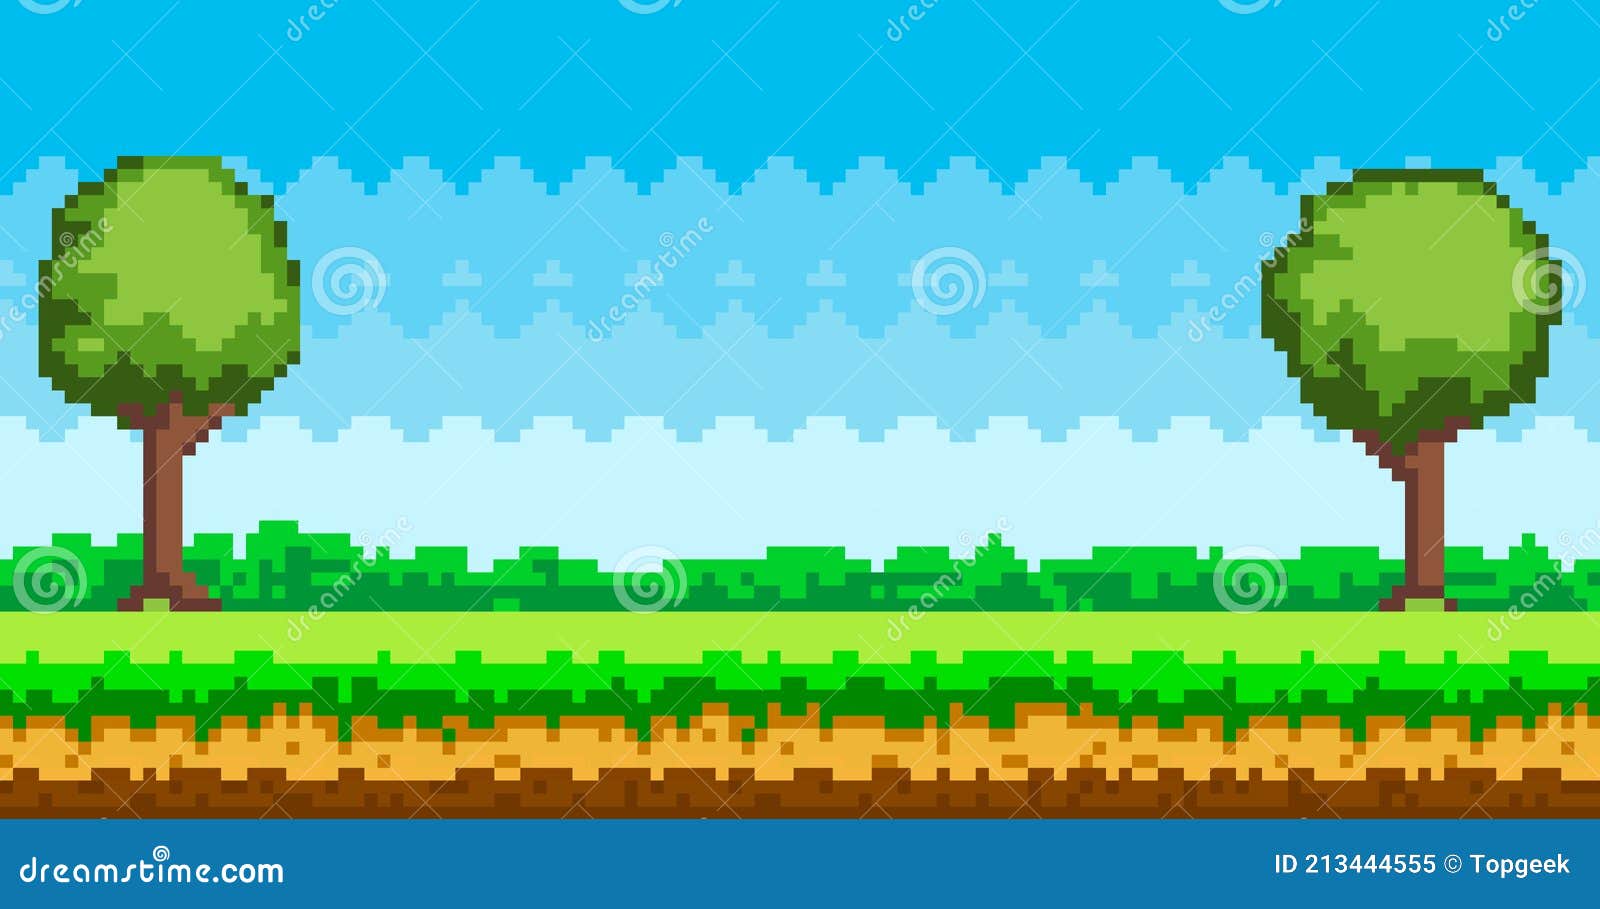 Muốn tạo một cảnh nền game mặt đất khác biệt với cây cỏ xanh tươi? Pixel-game Background là sự lựa chọn hoàn hảo. Với hình ảnh độc đáo và chân thực, cảnh nền game này sẽ mang đến cho trò chơi của bạn một sự khác biệt đầy màu sắc và tạo nên tiếng vang mạnh mẽ.